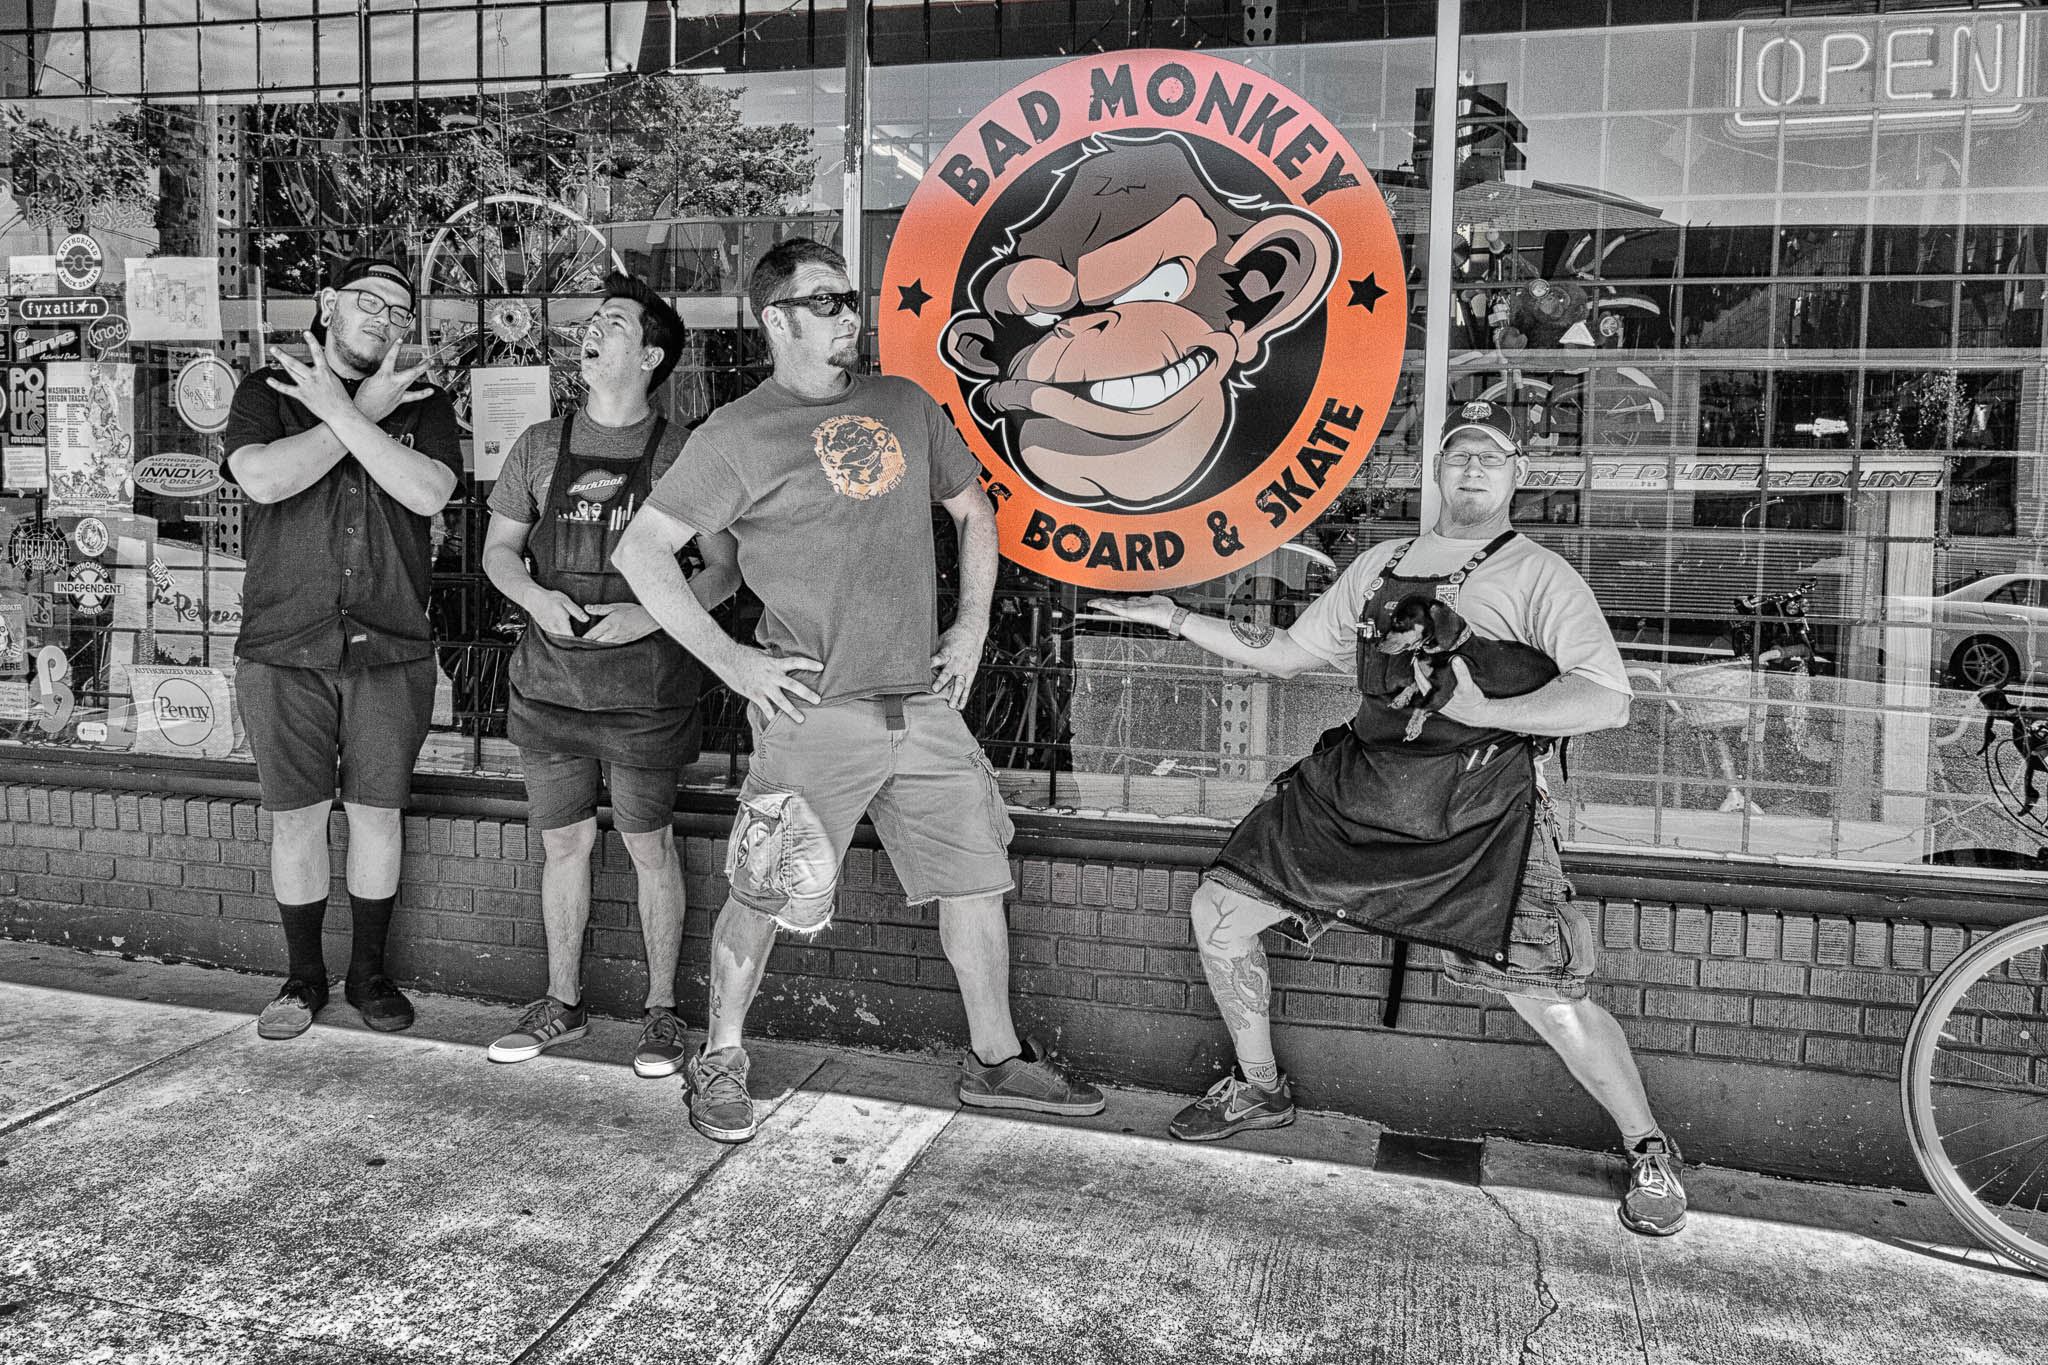 Bad Monkey Crew